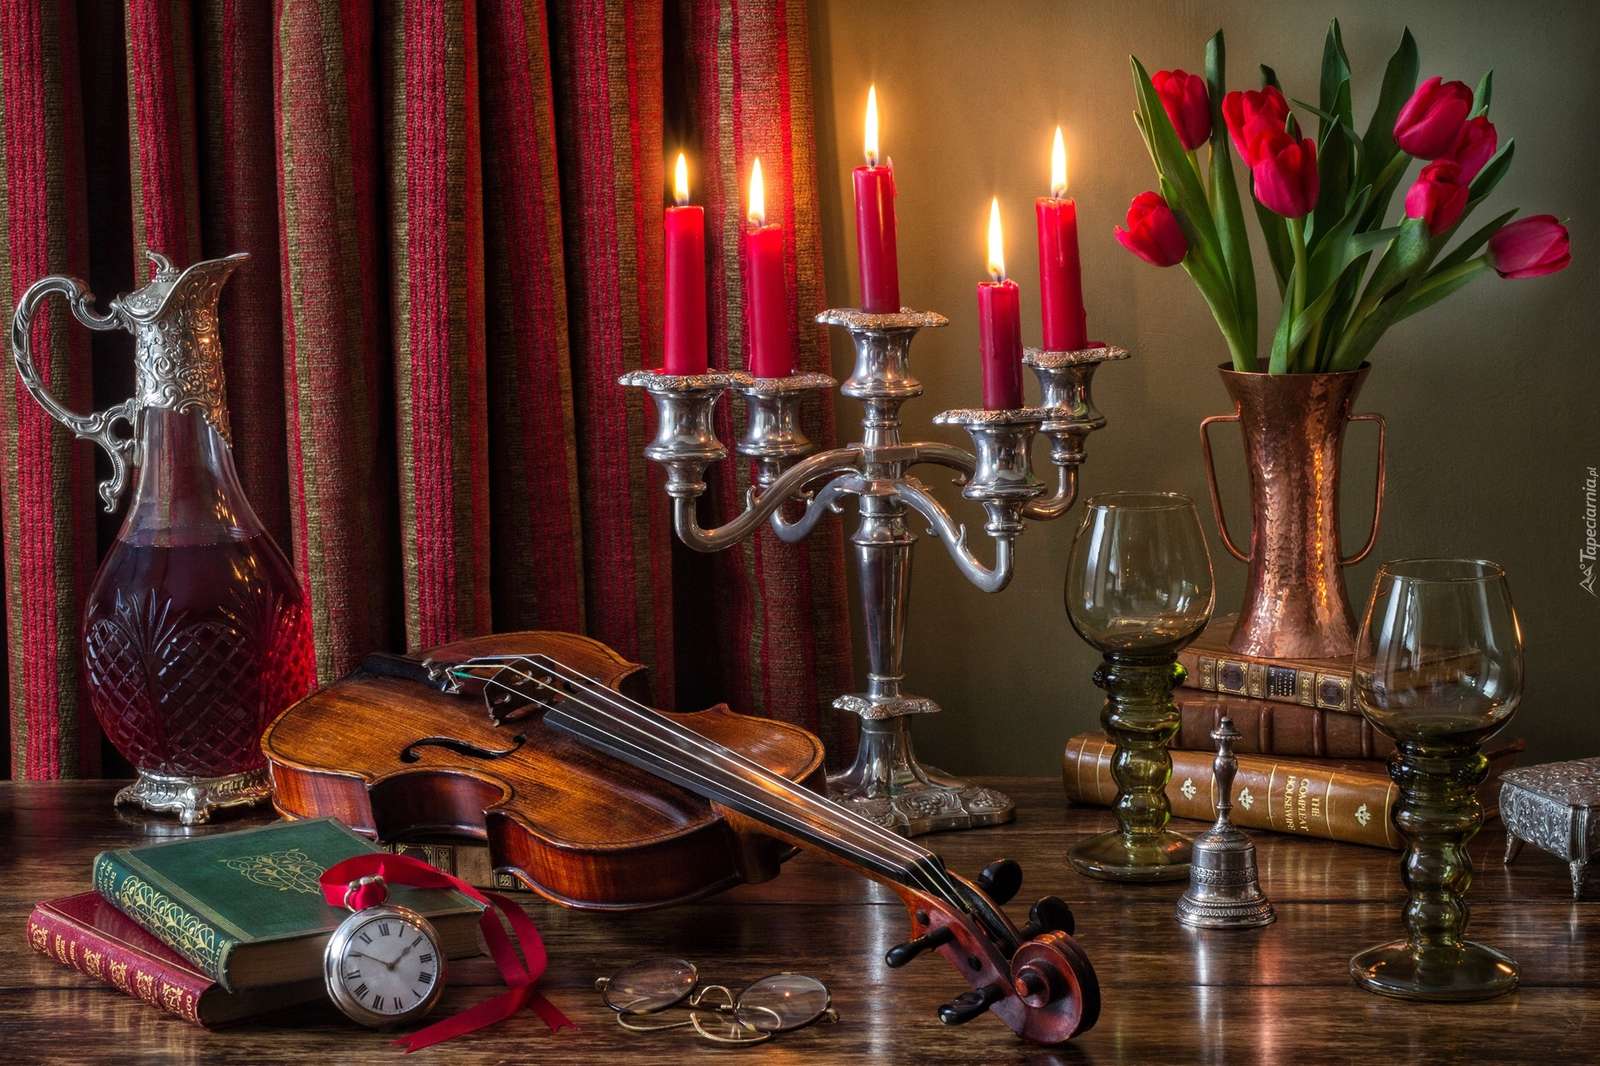 hegedű a gyertyatartó mellett, piros gyertyákkal online puzzle